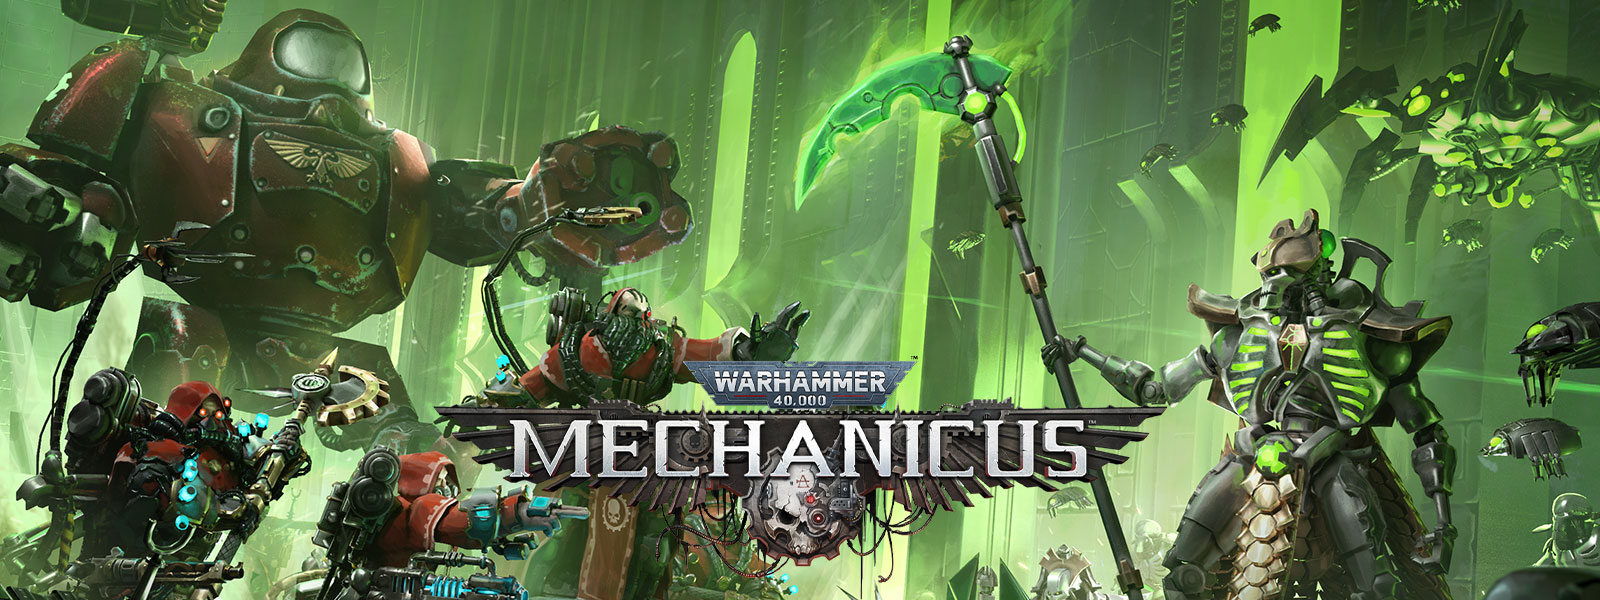 Warhammer 40,000: Mechanicus, Para exércitos de alta tecnologia se enfrentarem em combate.